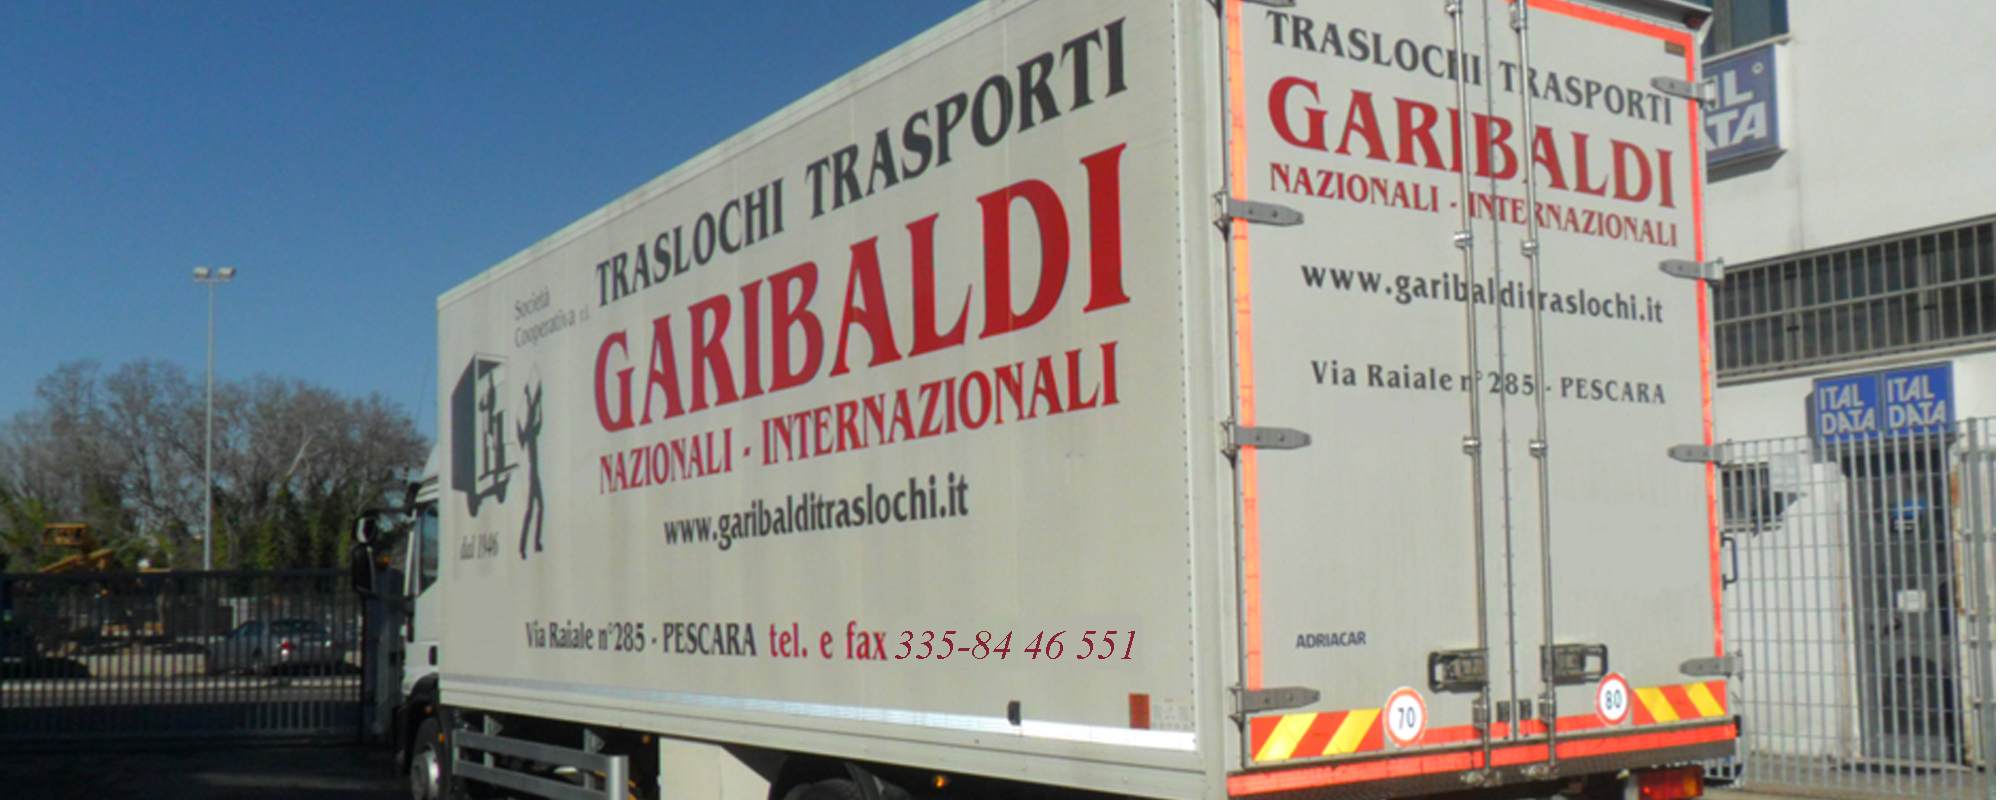 Garibaldi Traslochi e Servizi a Pescara dal 1946